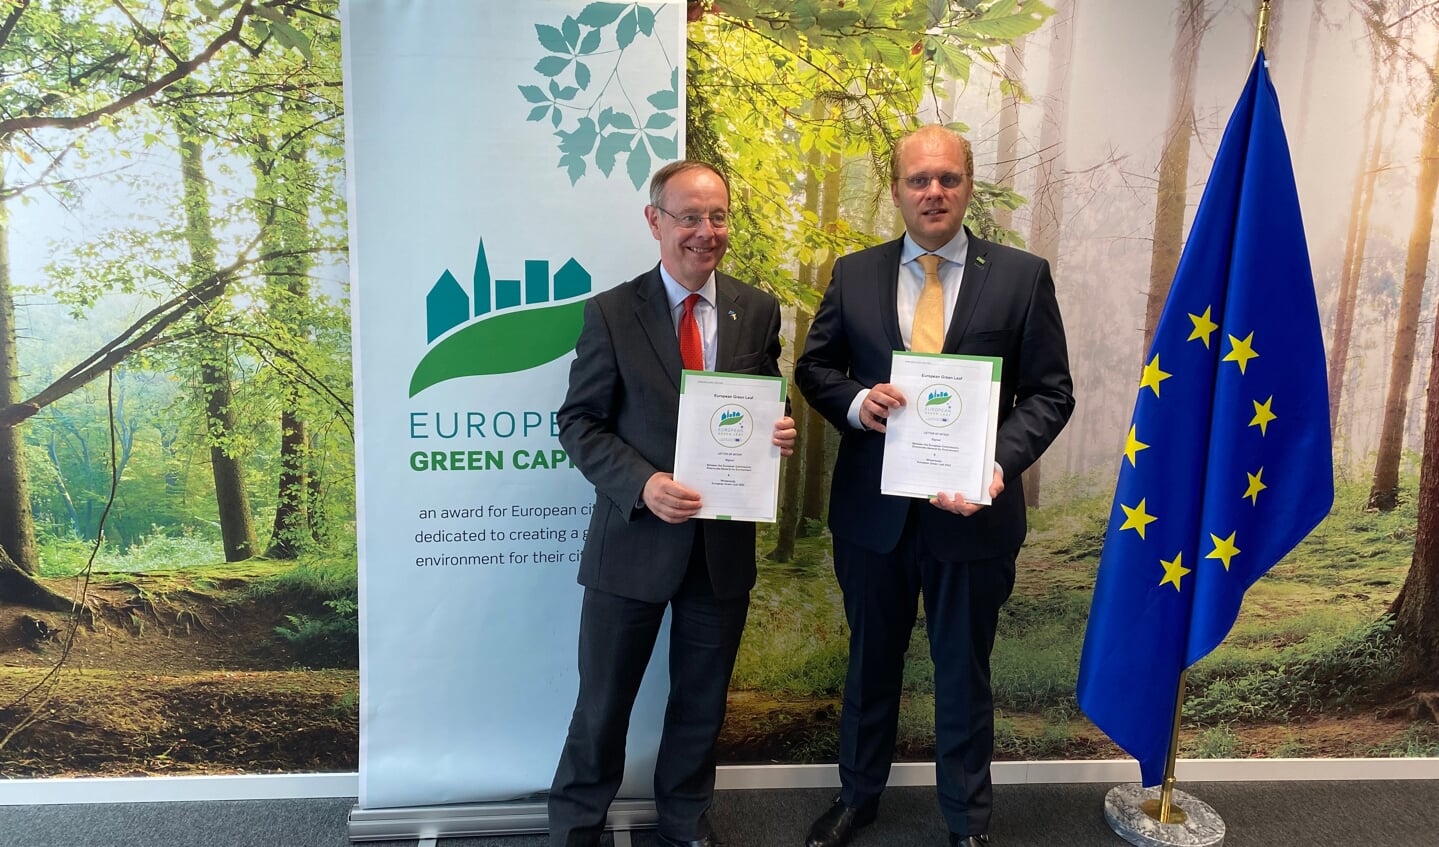 Burgemeester Bengevoord en  Deputy Director-General Child van de Europese Commissie tekenden op 19 mei in Brussel een intentieverklaring om de afspraken hierover vast te leggen. Foto: PR